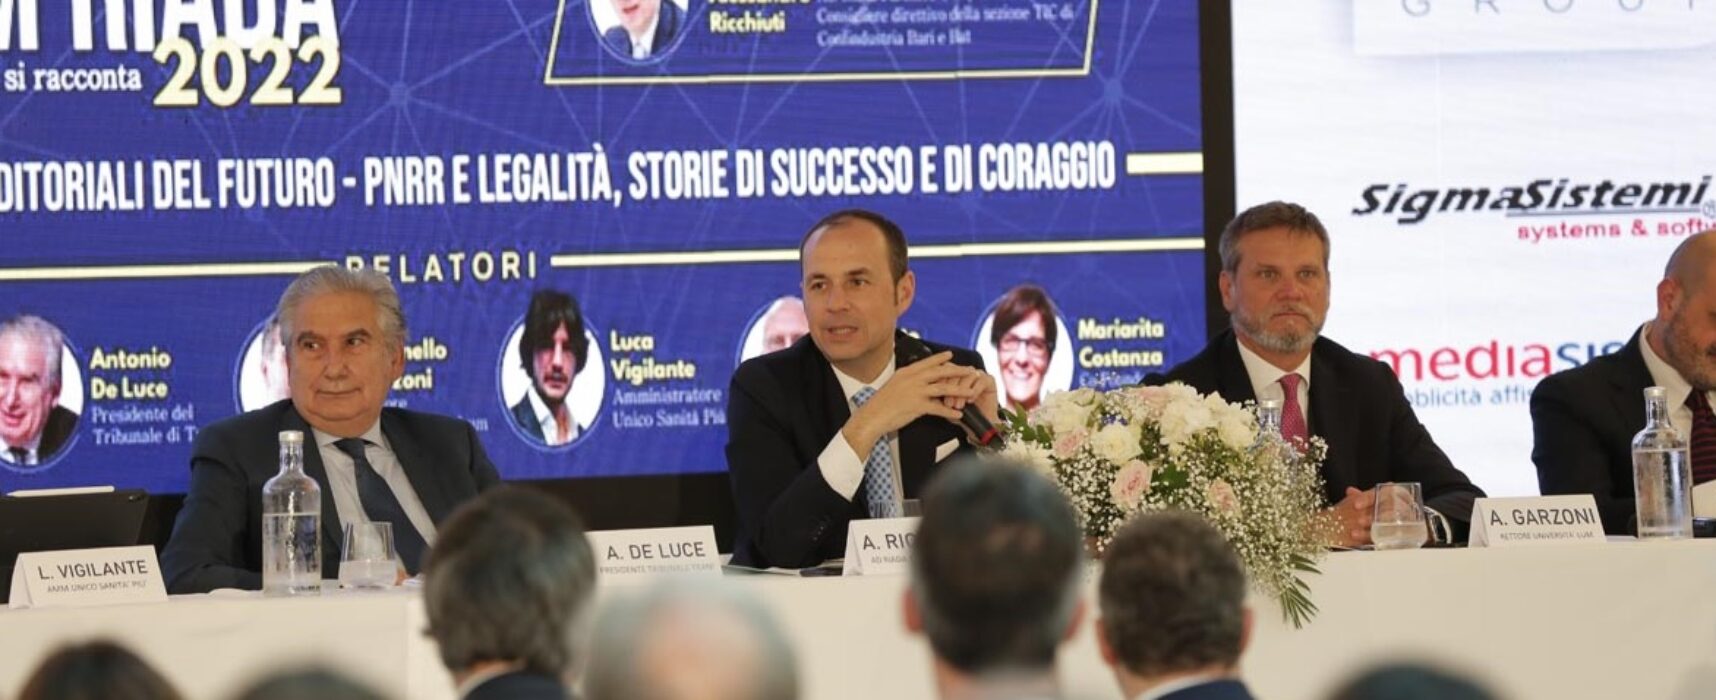 Ministro Urso e Vice Ministro Sisto al V Forum Riada, tra i temi Made in Italy e internalizzazione